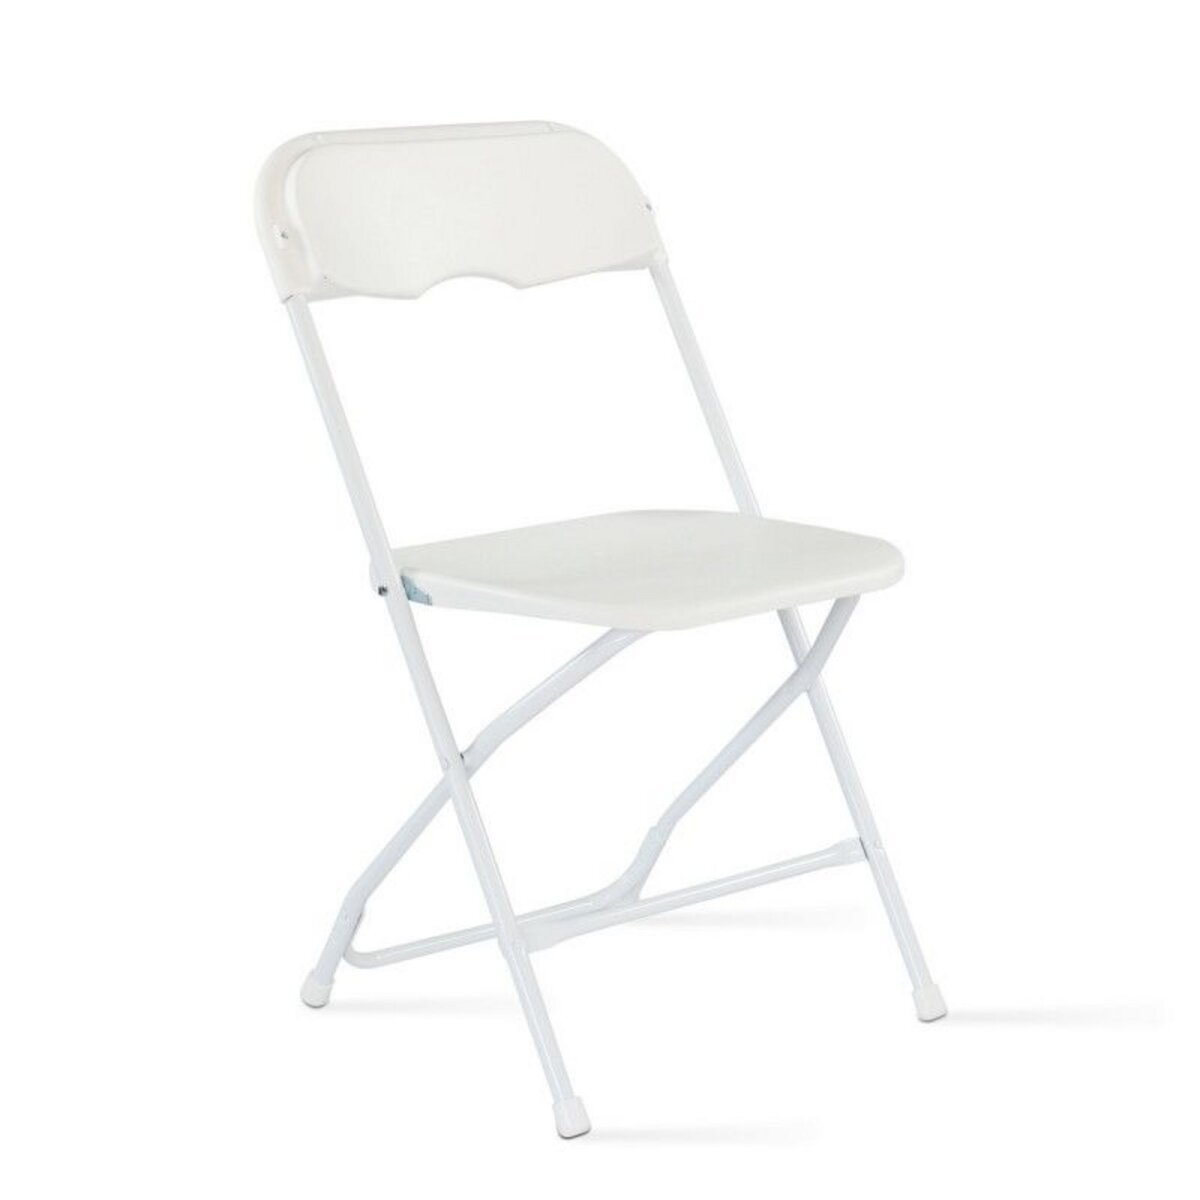 Ensemble table et chaises pliantes de jardin - 8 places 180cm - camping réception traiteur buffet - Blanc